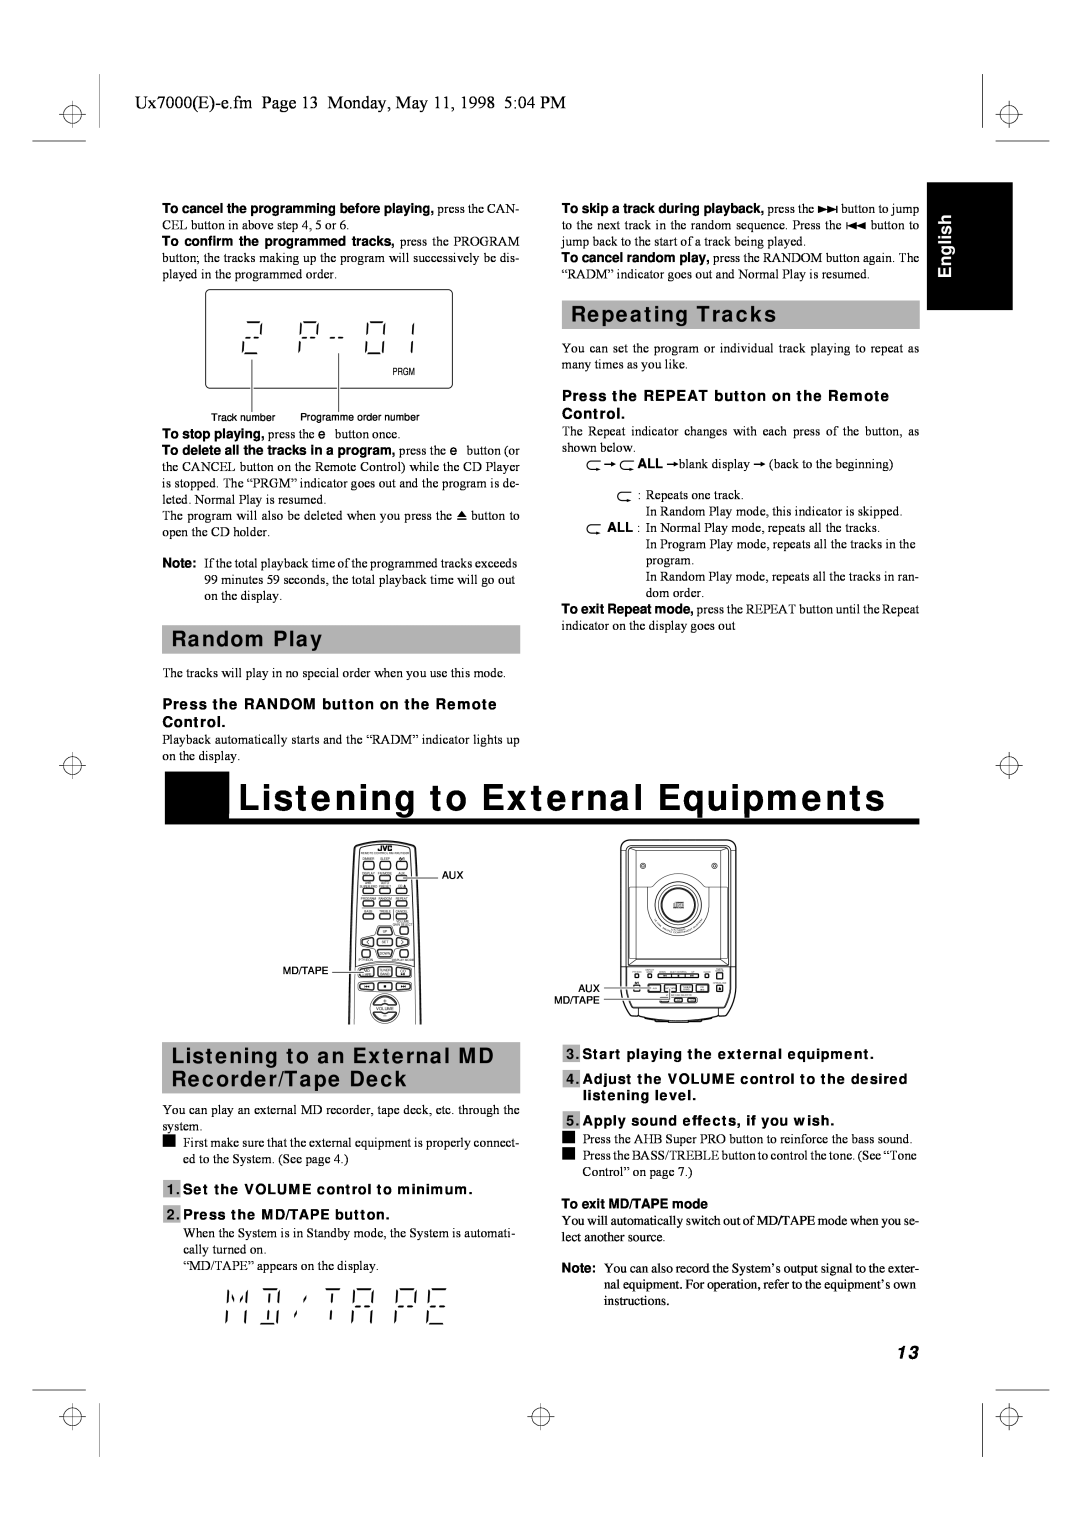 JVC UX-7000R Listening to External Equipments, Repeating Tracks, Random Play, English, #EXWWRQ#LQ#DERYH#VWHS#7/#8#RU#91 